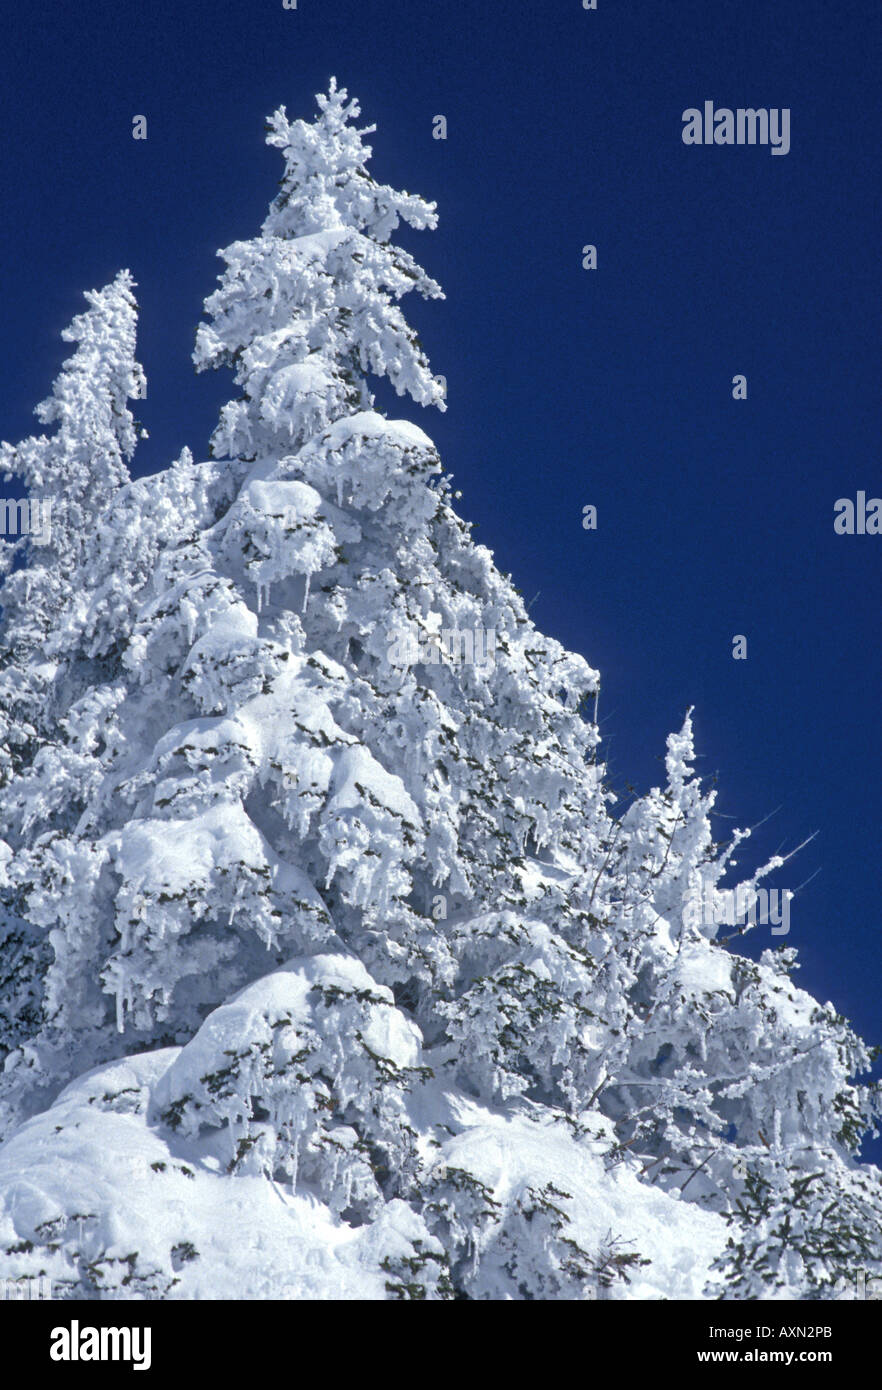 Tree laden with snow Stock Photo